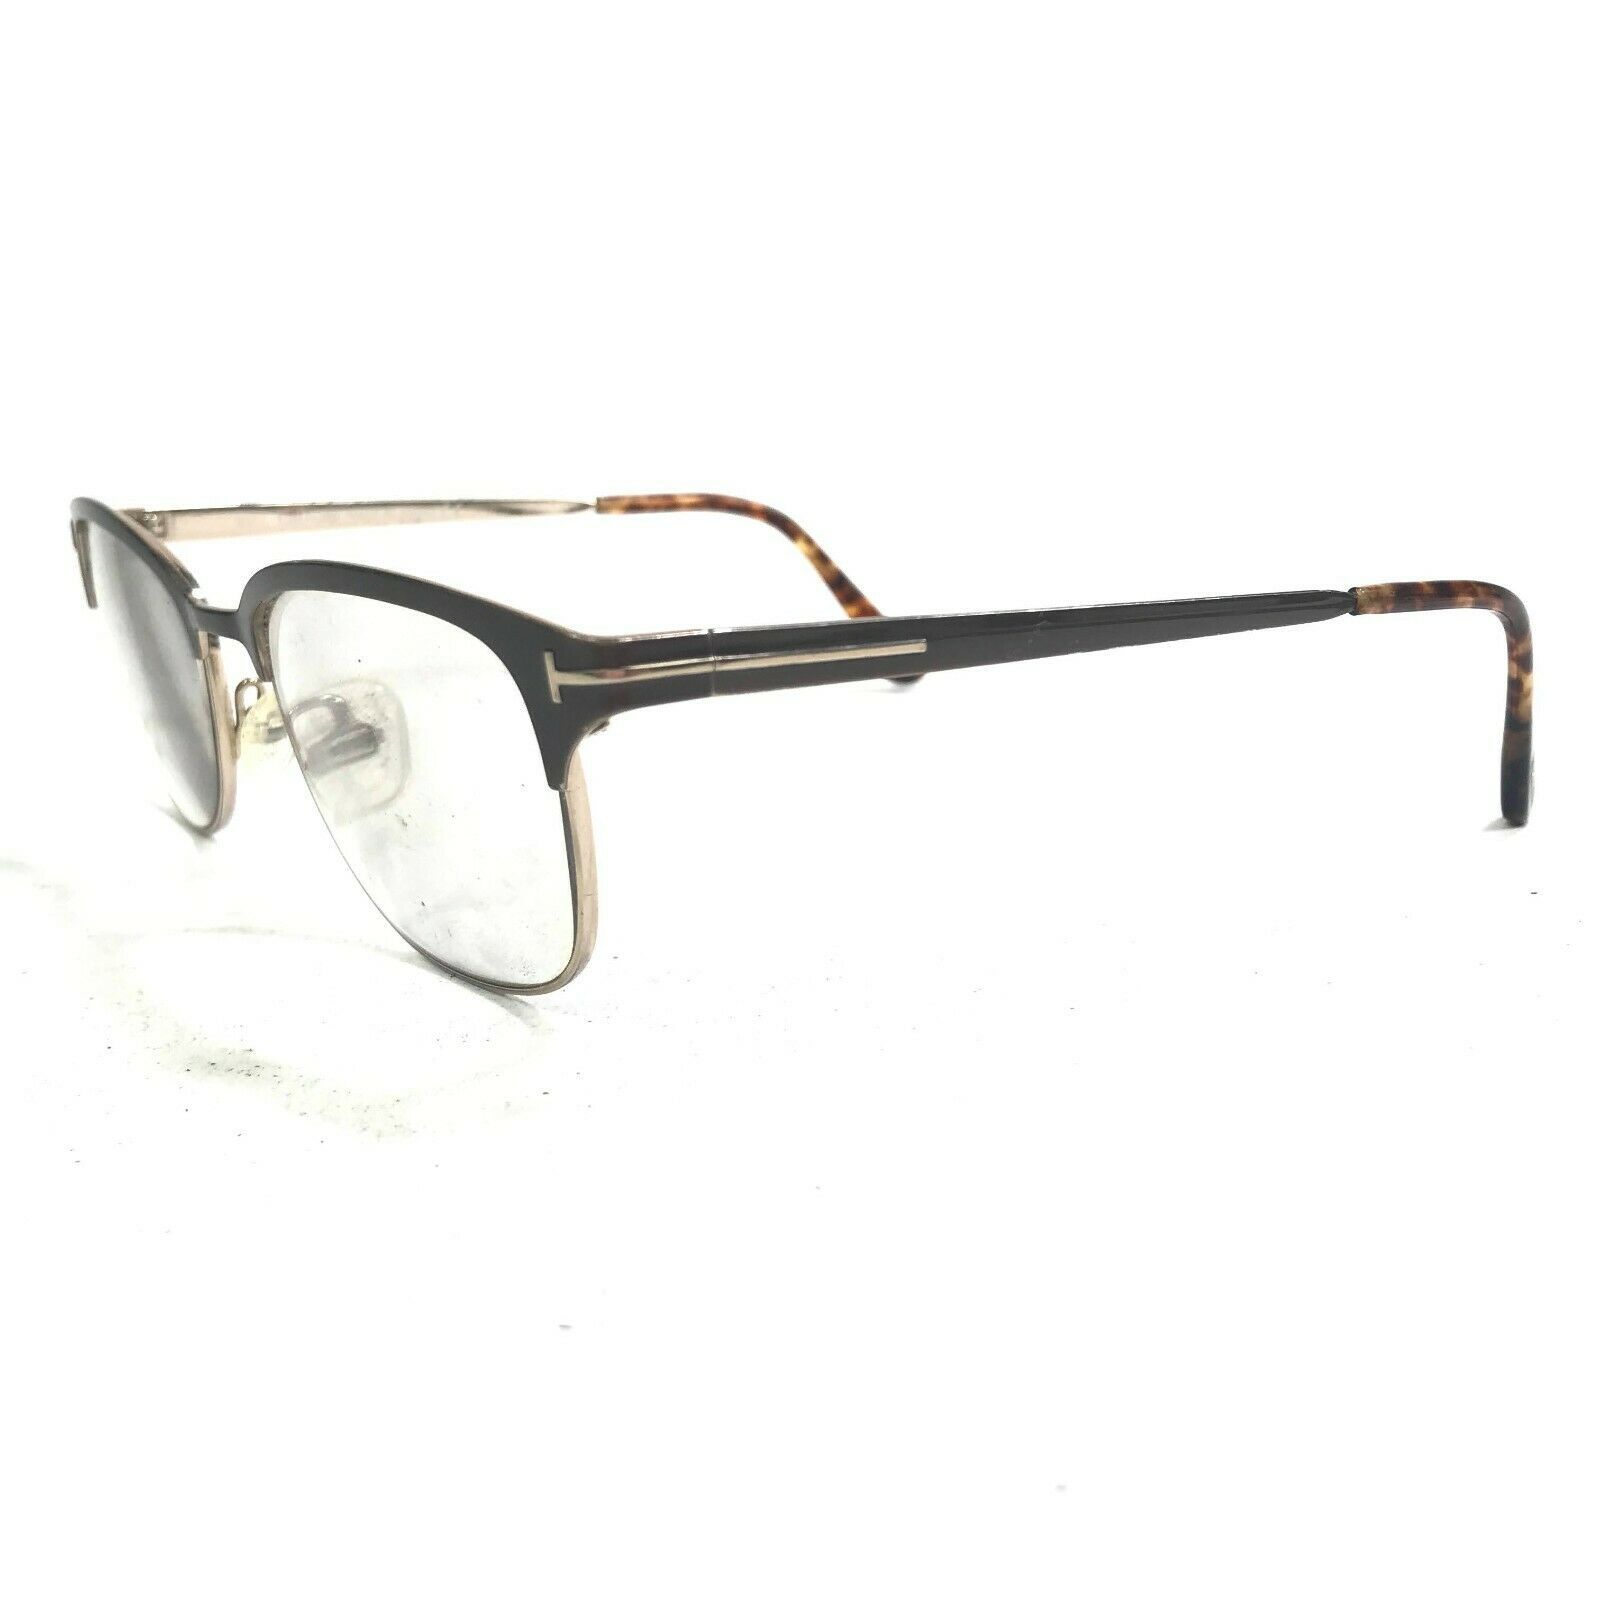 Primary image for Tom Ford TF5381 050 Eyeglasses Sunglasses Frames Cat Eye Titanium Gold Tortoise